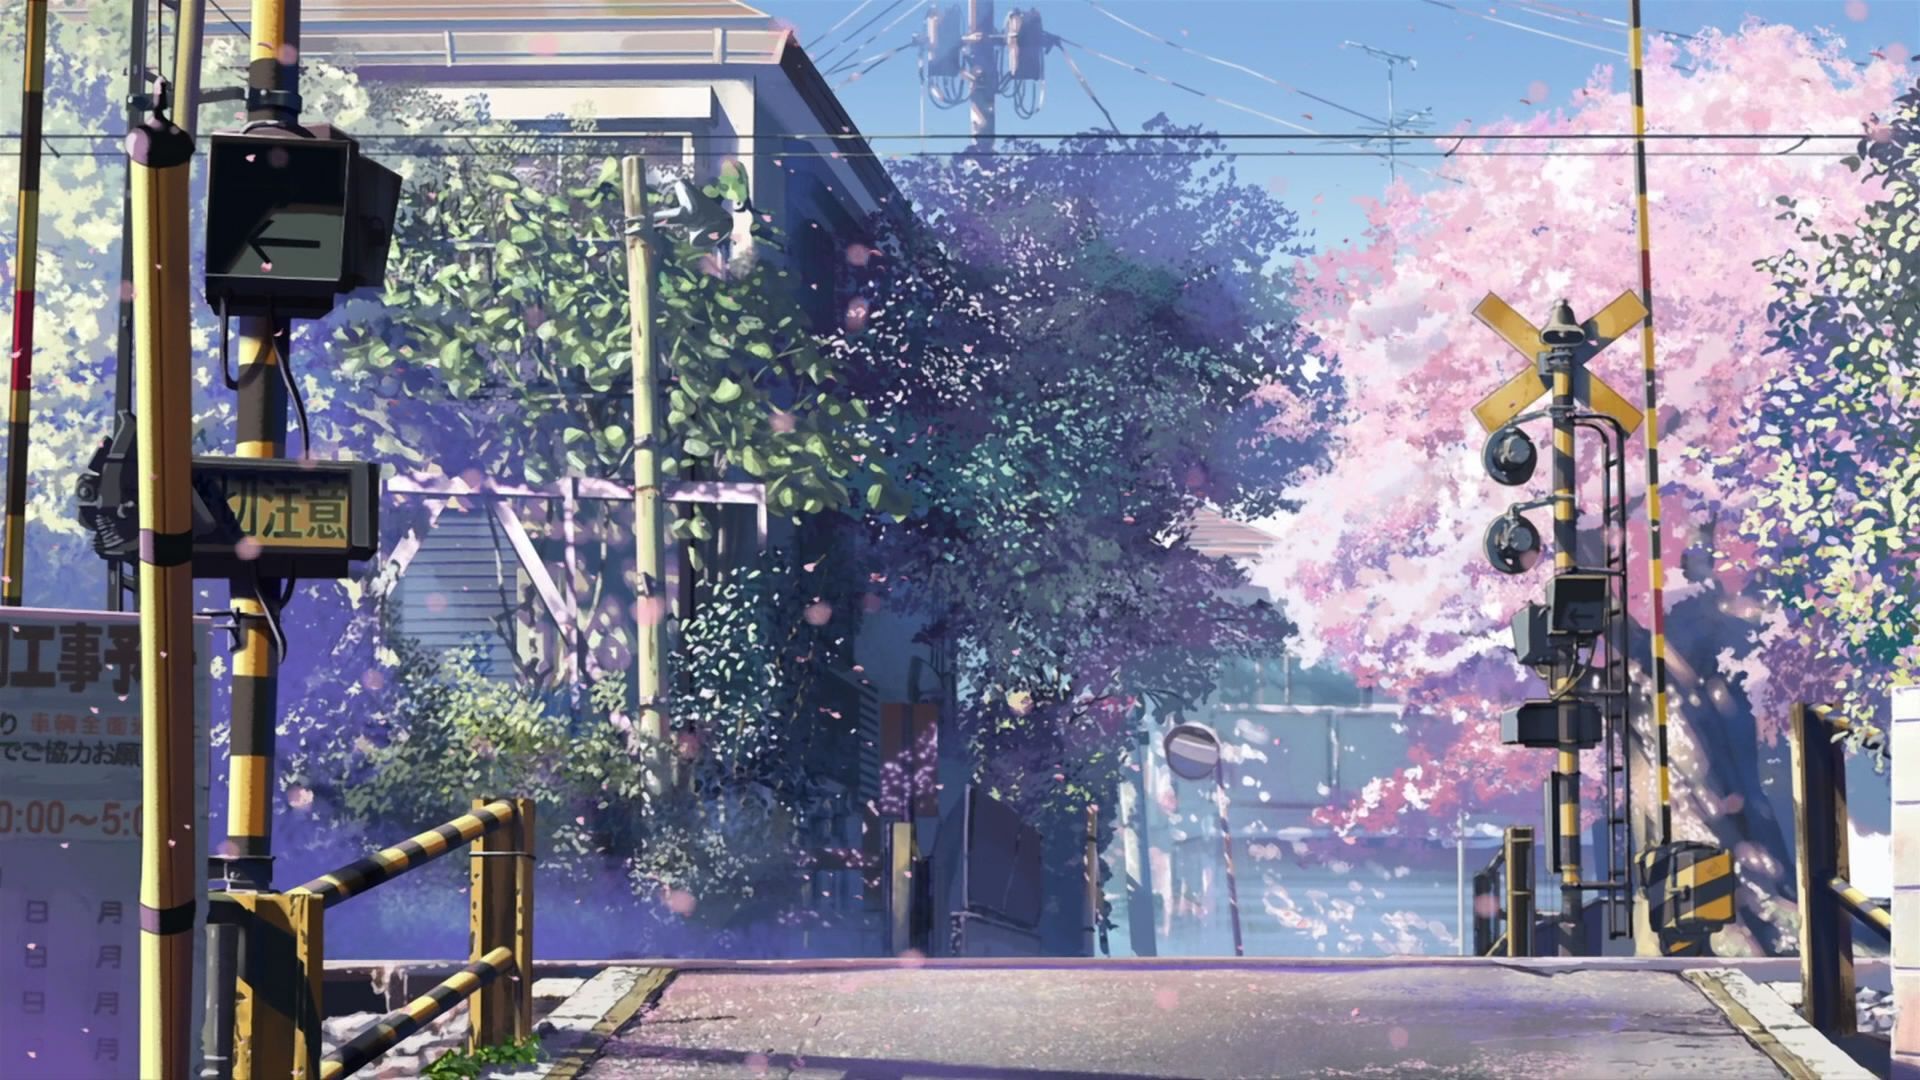 Wallpaper. Anime scenery wallpaper, Anime scenery, Anime wallpaper